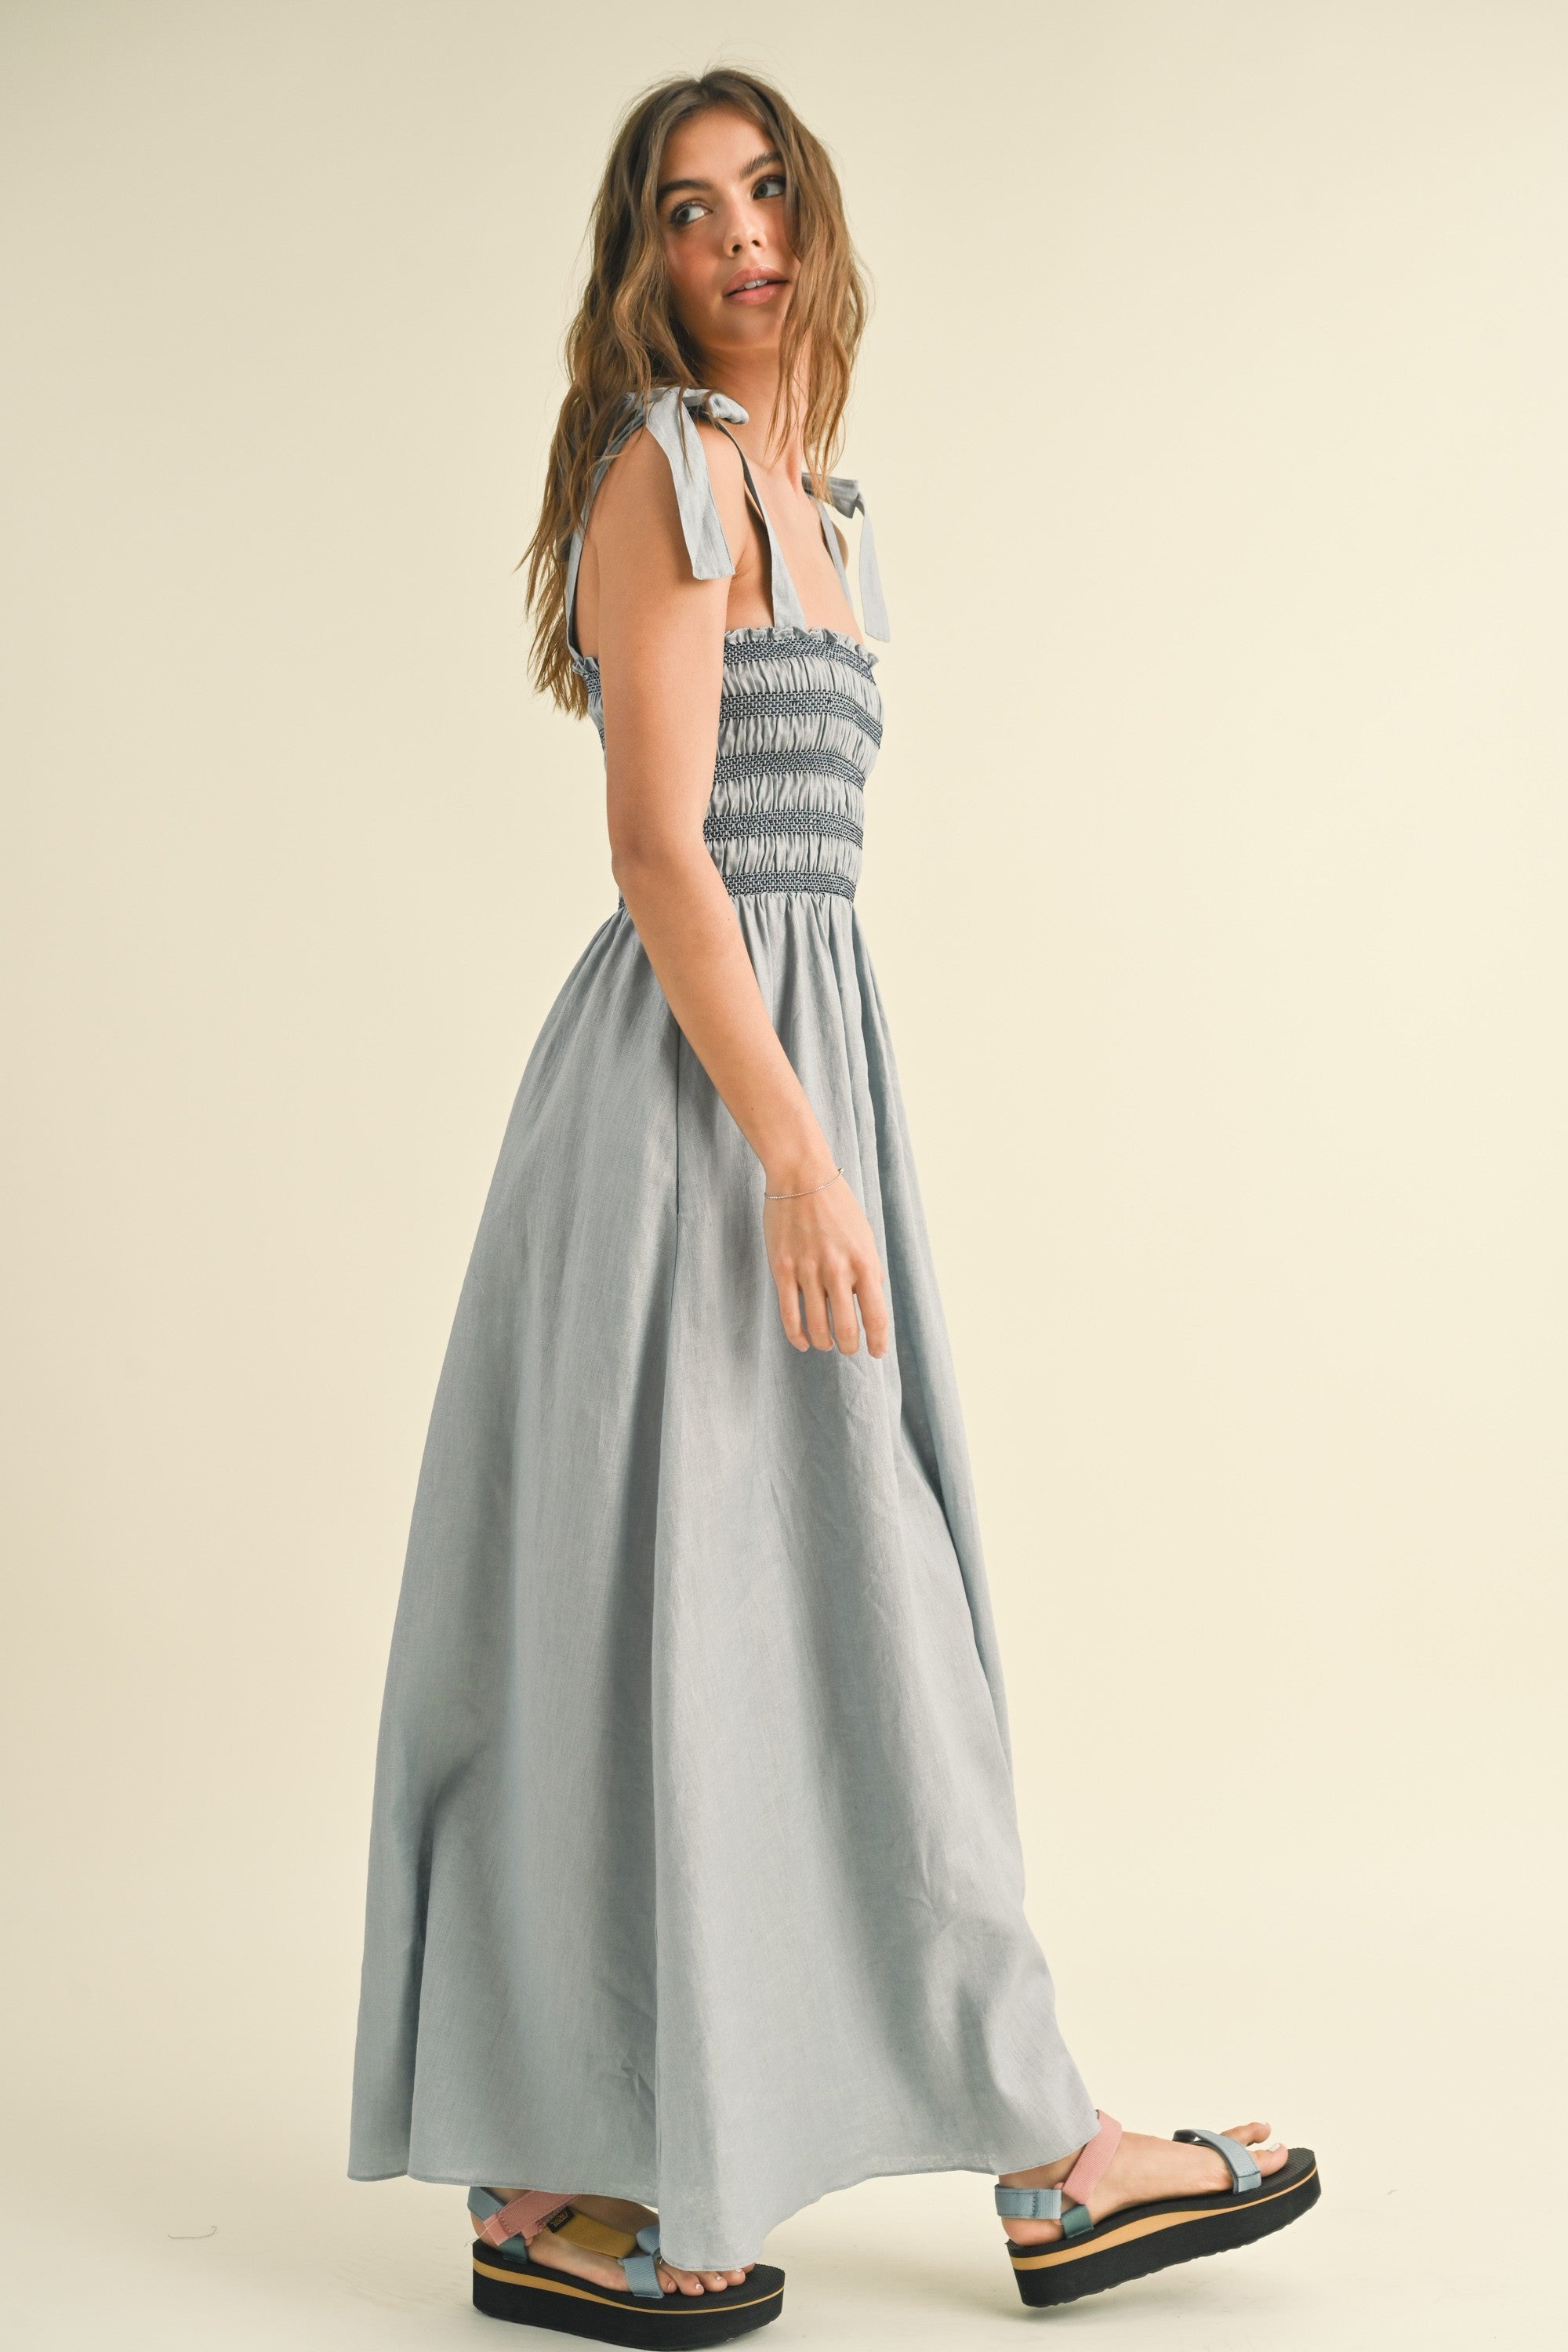 The Polina Blue Linen Smocked Maxi Dress